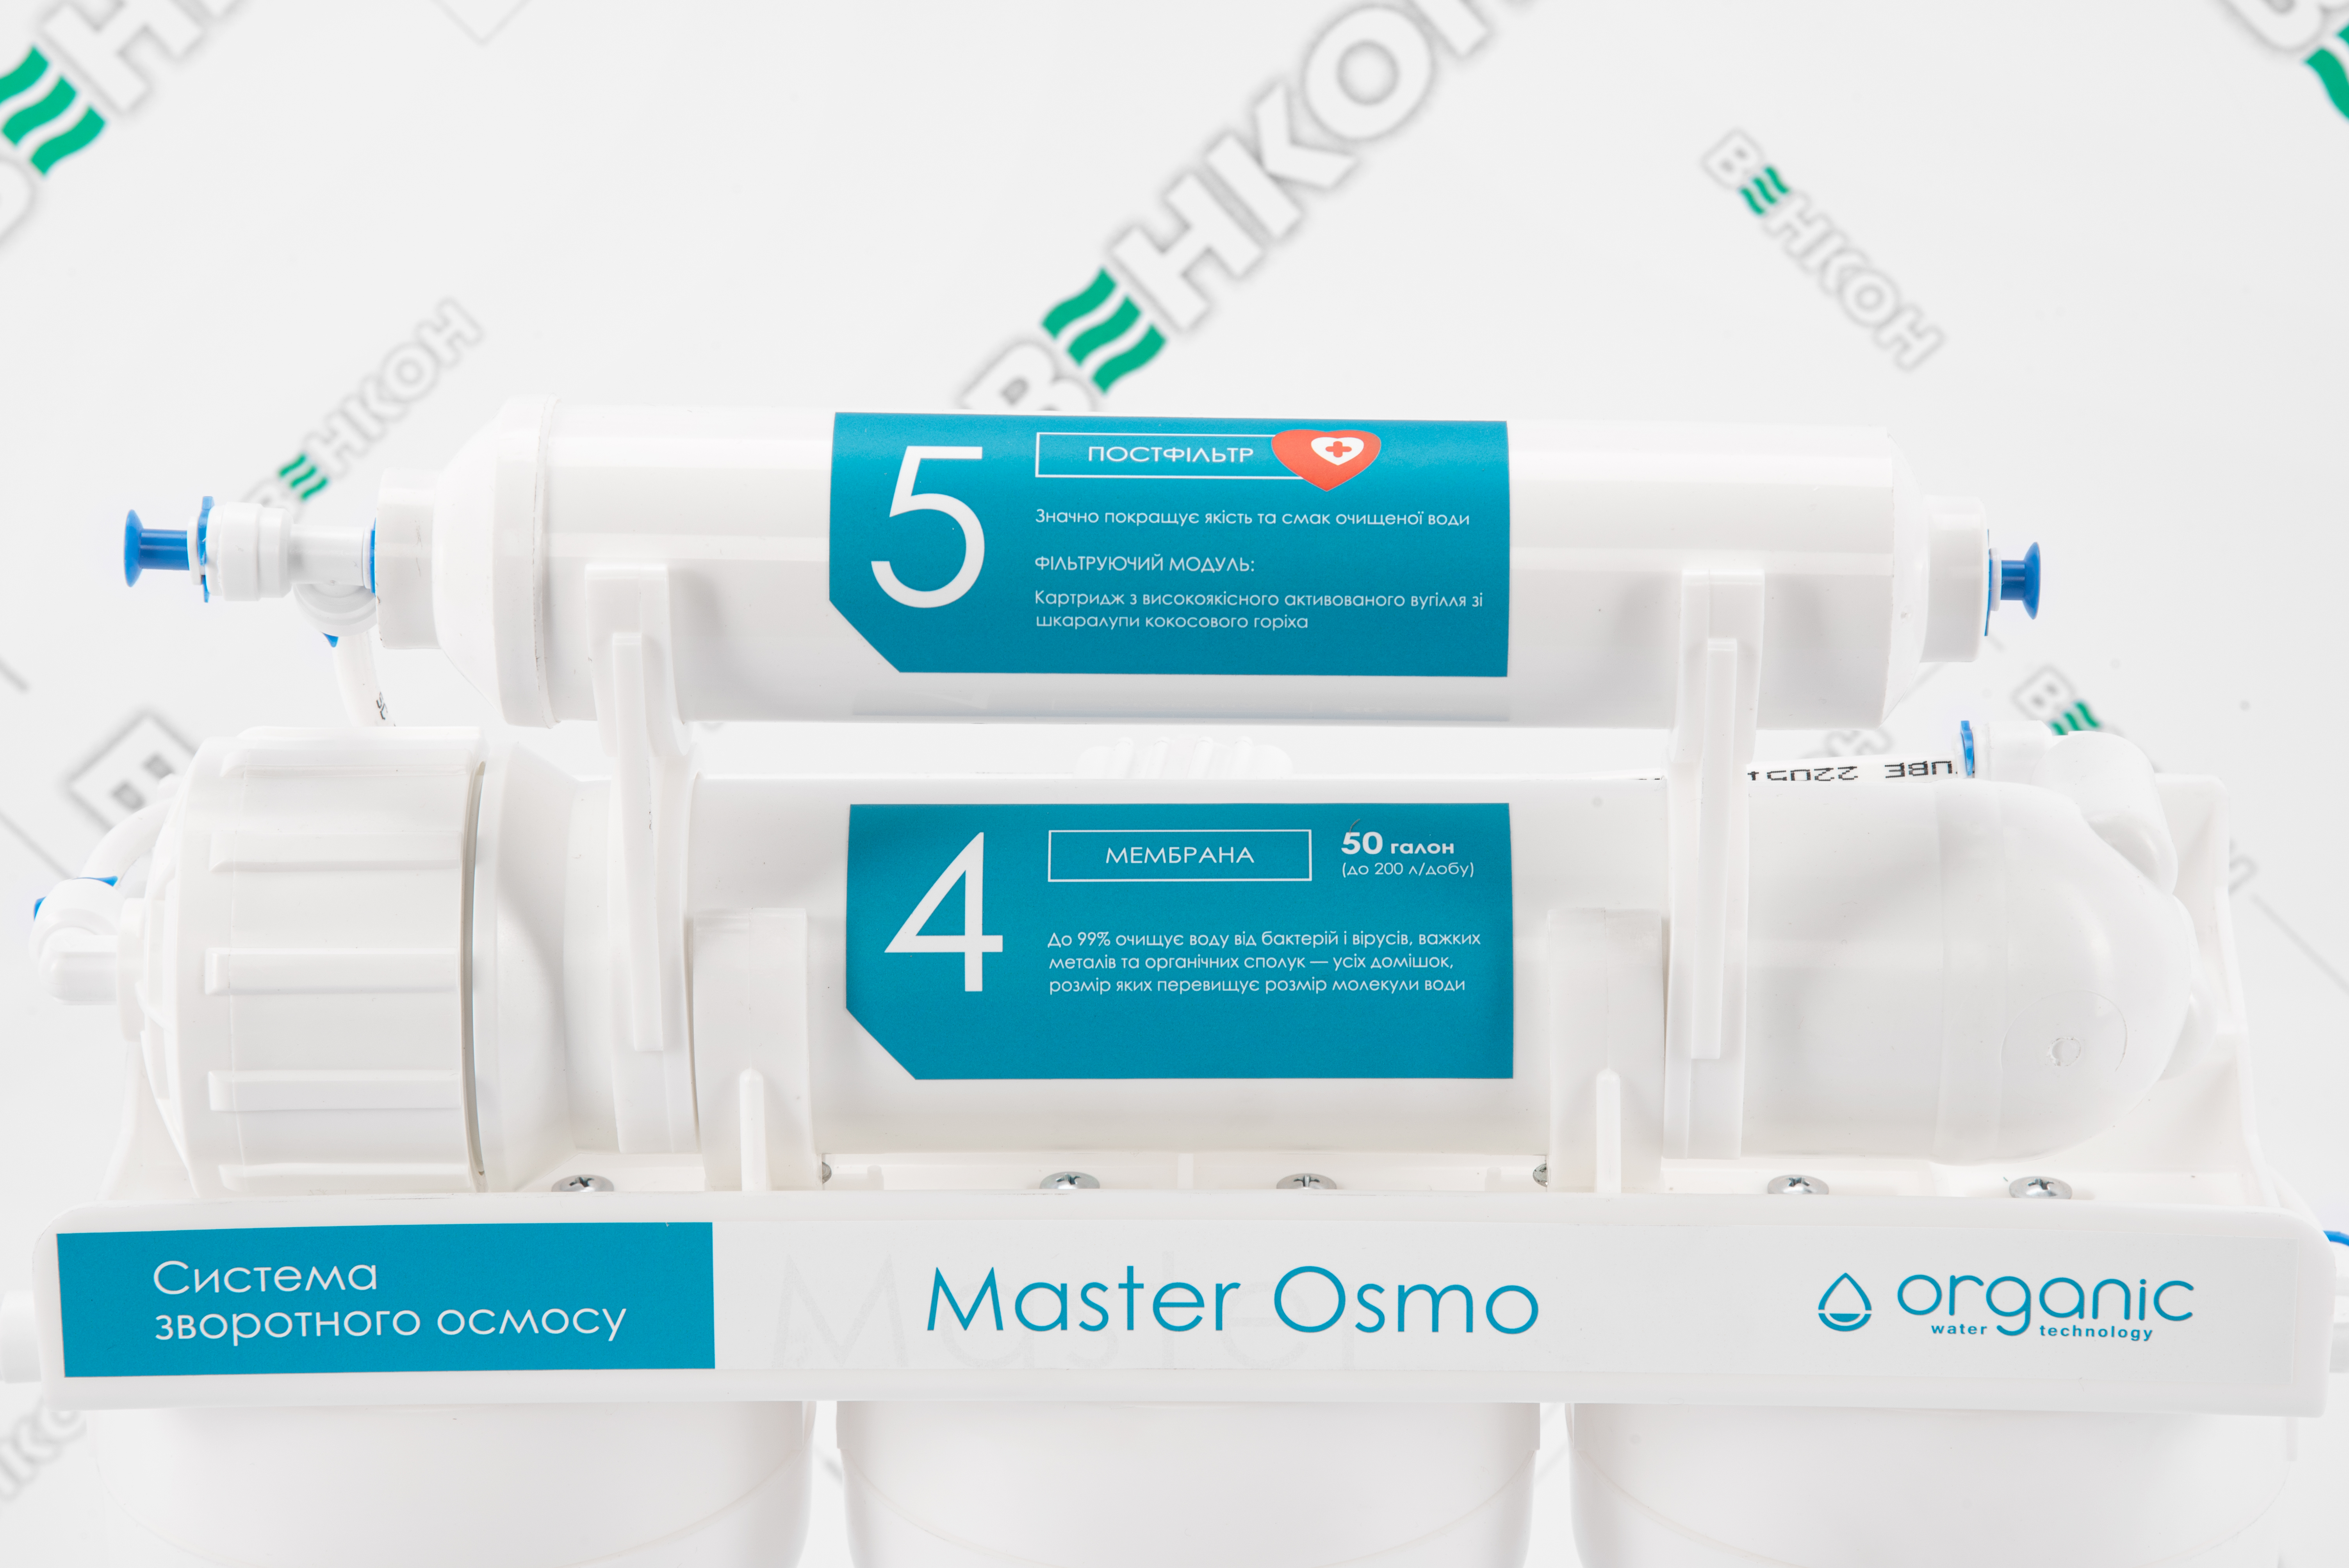 Фильтр для воды Organic Master Osmo 5 отзывы - изображения 5